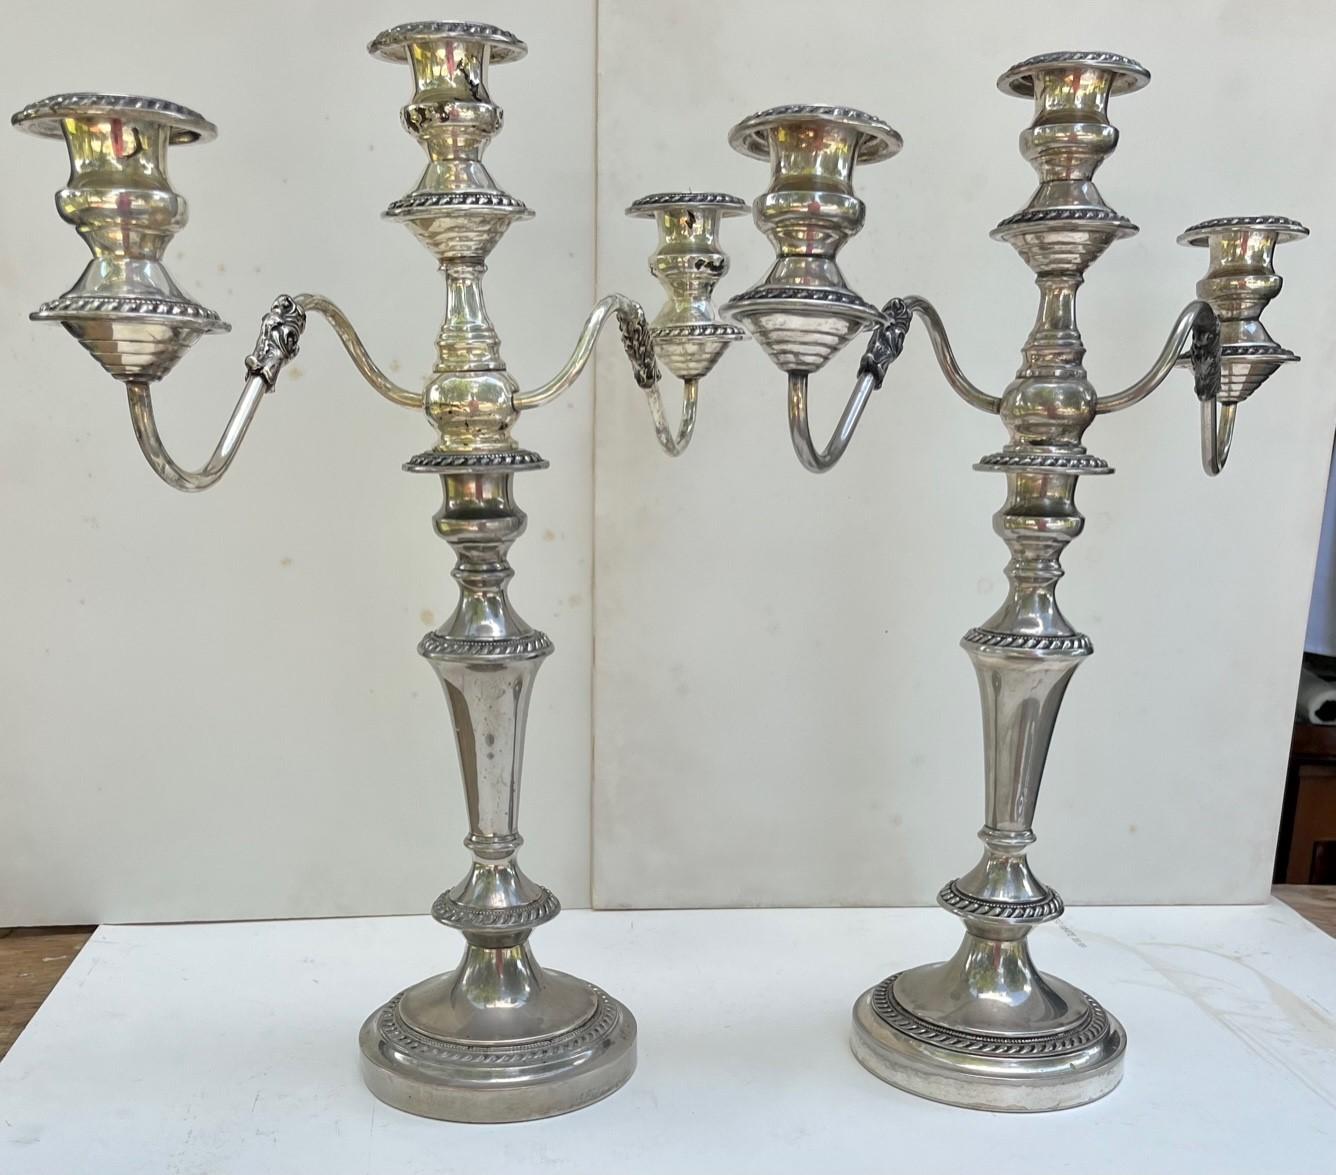 Paire de candélabres à trois têtes en métal argenté George III de Sheffield.

Elegante paire de candélabres à trois lumières en métal argenté de Sheffield, datant du 19e siècle, avec deux bras à volutes. Chacune d'entre elles comporte trois